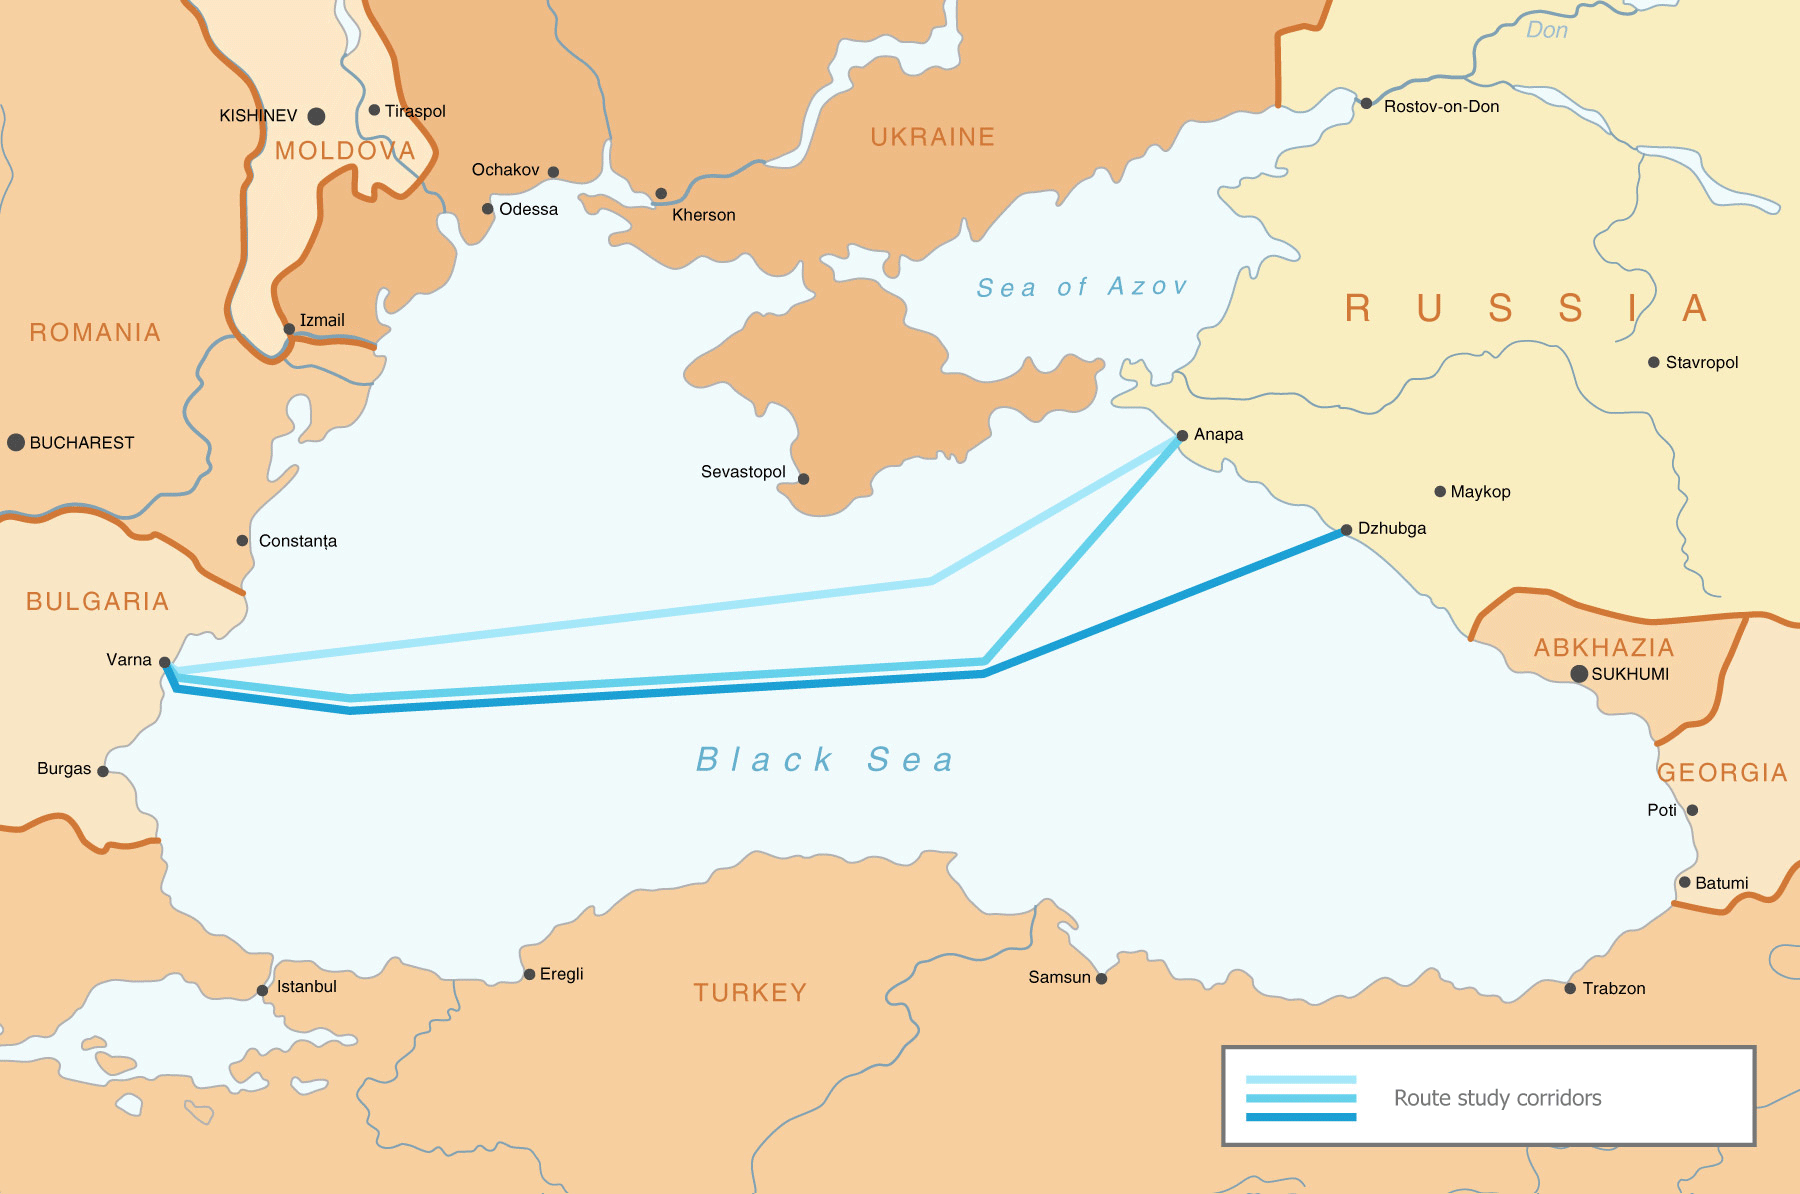 Граница россии по черному морю